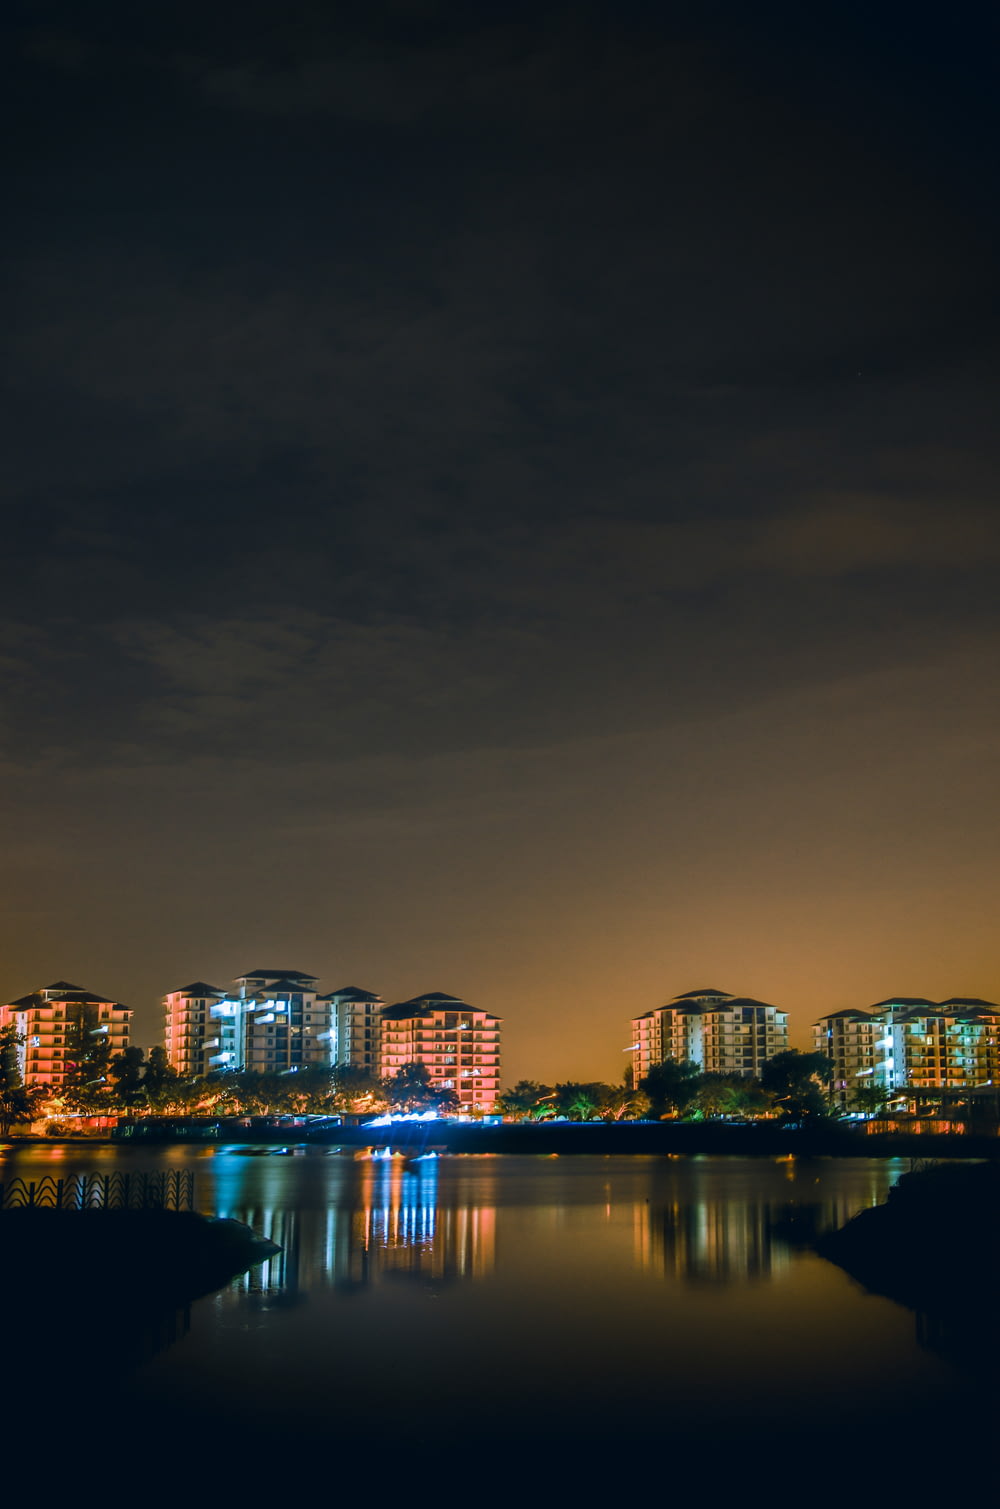 Riflessione dello skyline della città sullo specchio d'acqua durante la notte